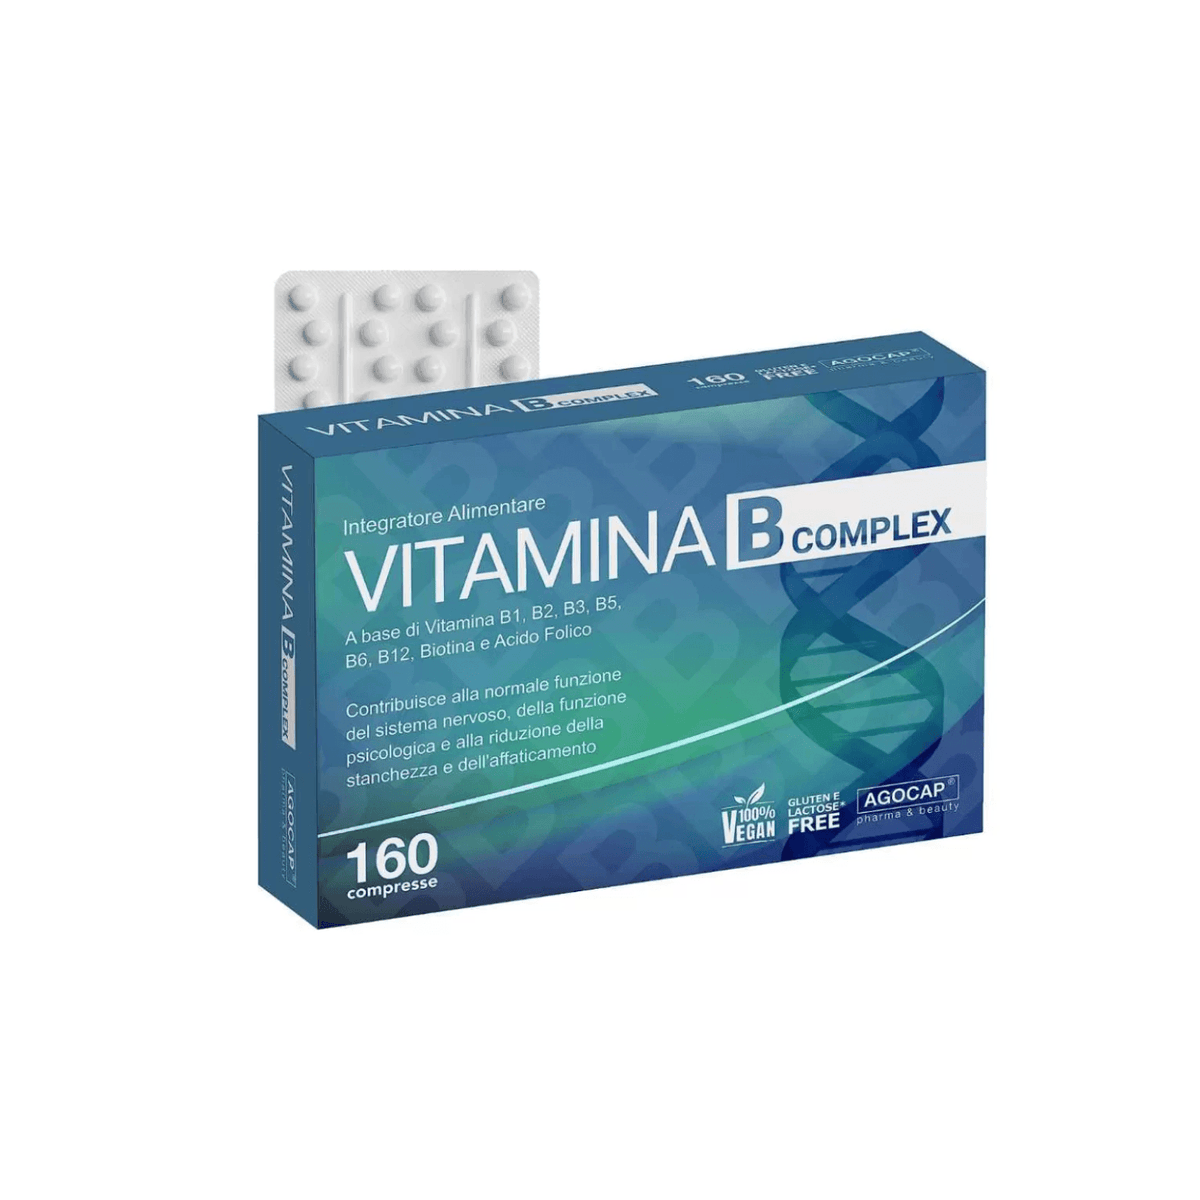 Vitamina B COMPLEX Alto Dosaggio 160 compresse